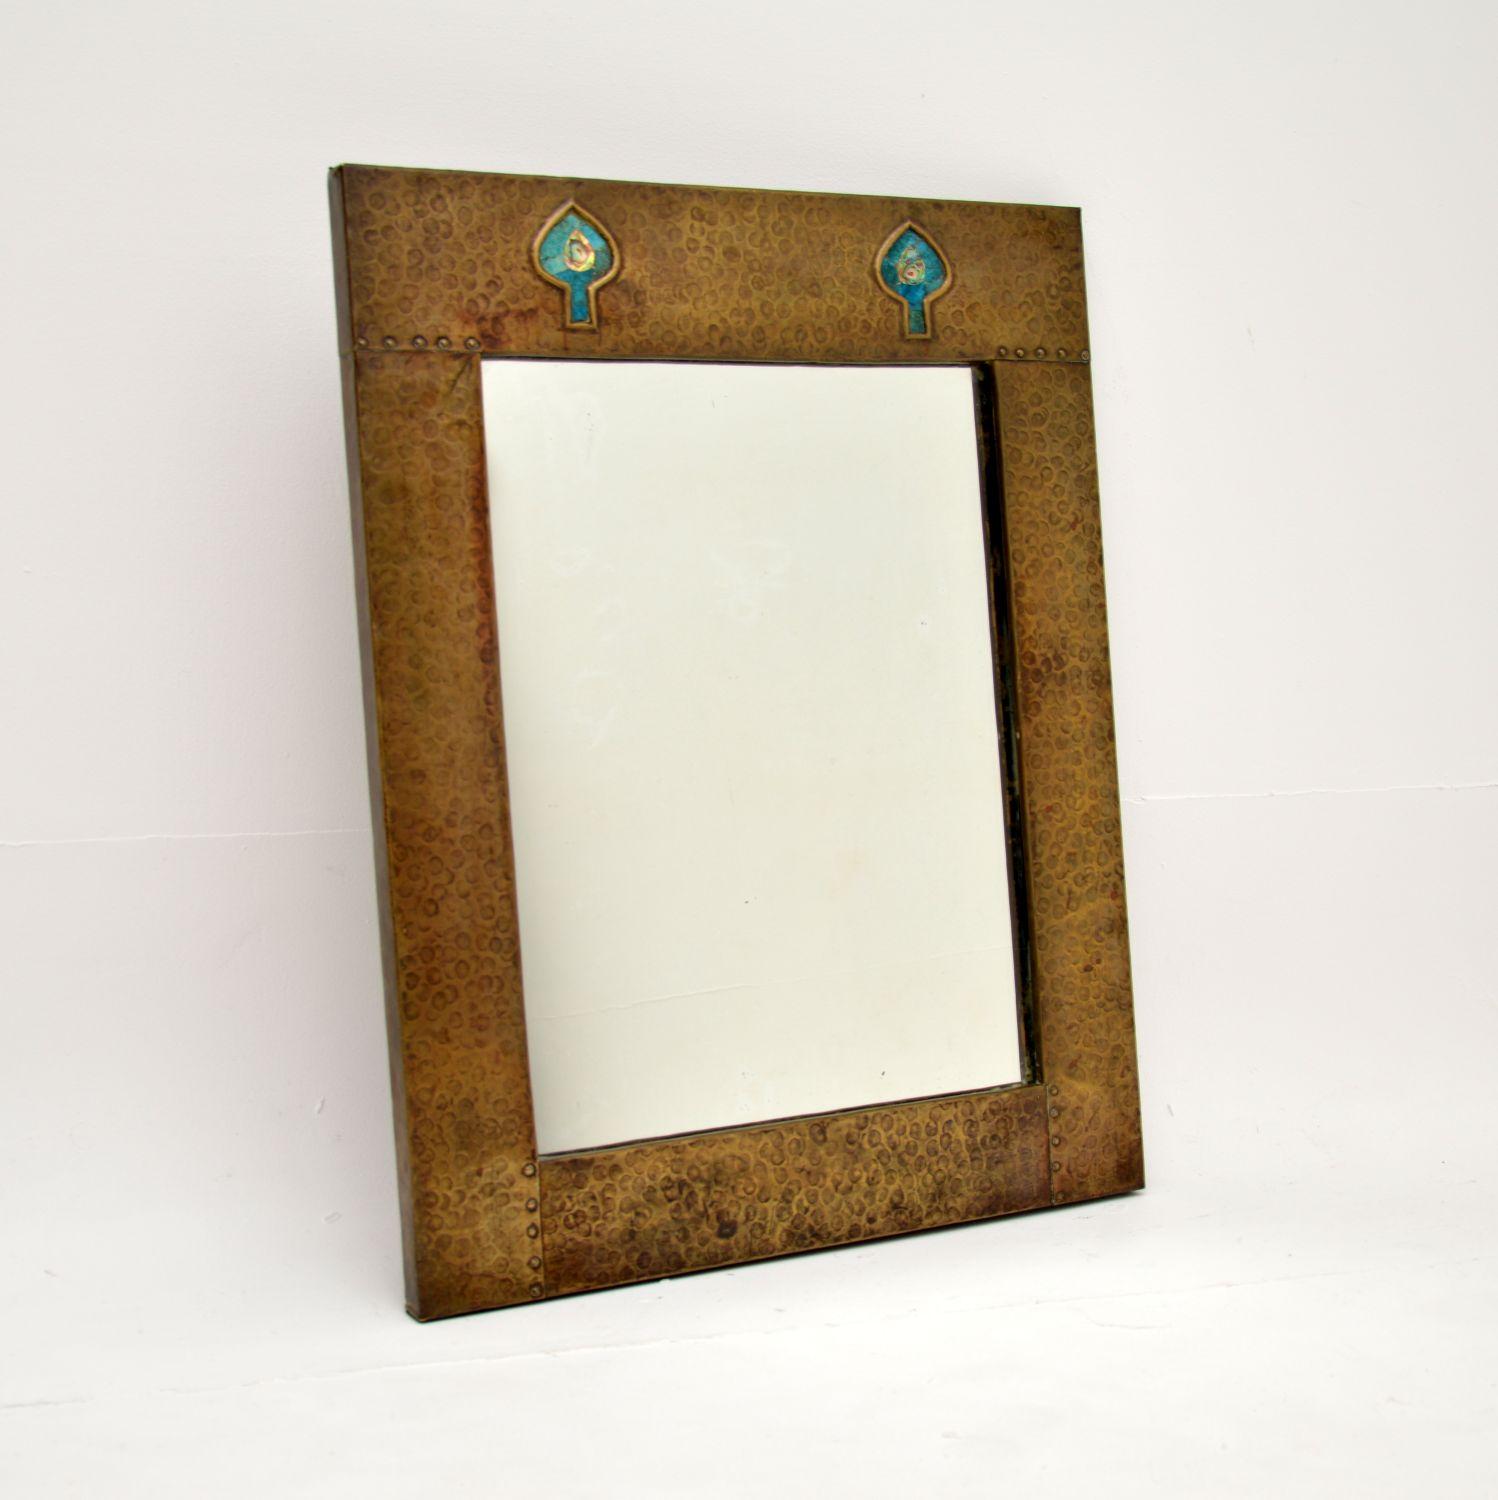 Ein atemberaubender antiker Jugendstil-Spiegel aus geschlagenem Messing. Sie wurde wahrscheinlich für Liberty of London hergestellt und stammt aus der Zeit zwischen 1890 und 1900.

Es ist schön gemacht und von schöner Qualität, die geschlagenen